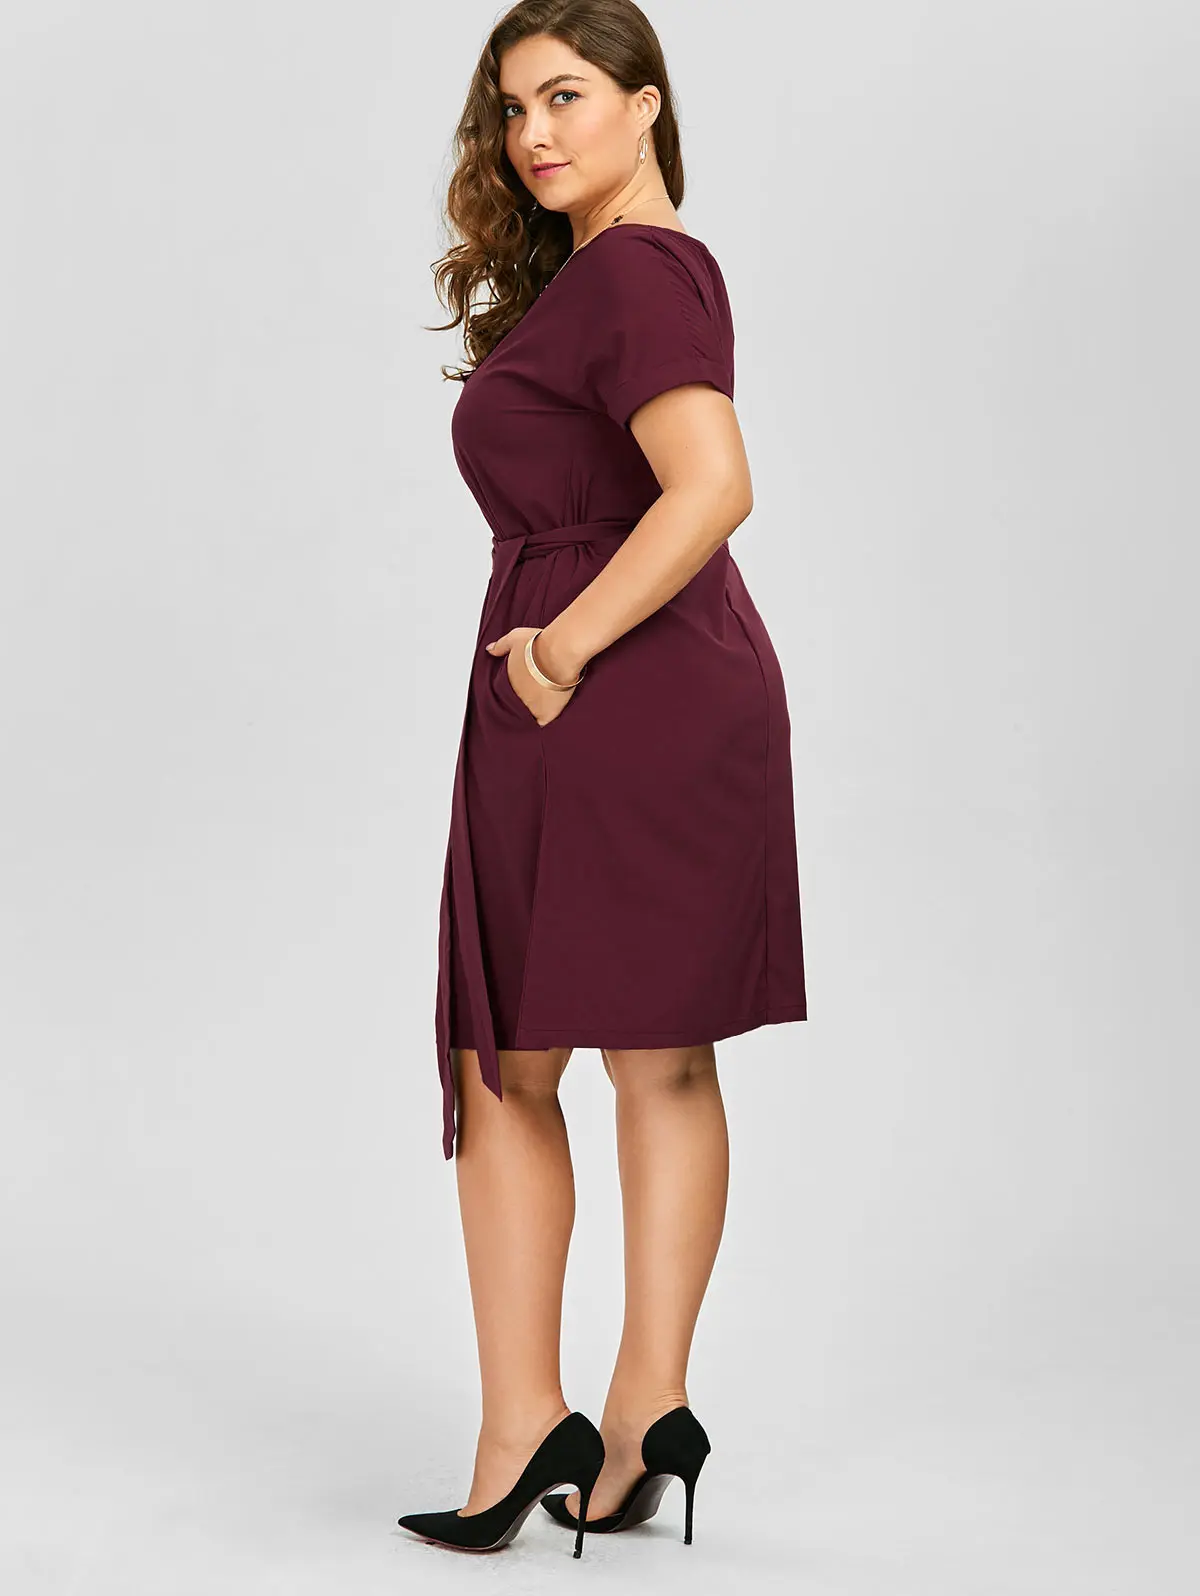 Женское винтажное платье до колена Wipalo с поясом и карманами одежда для работы